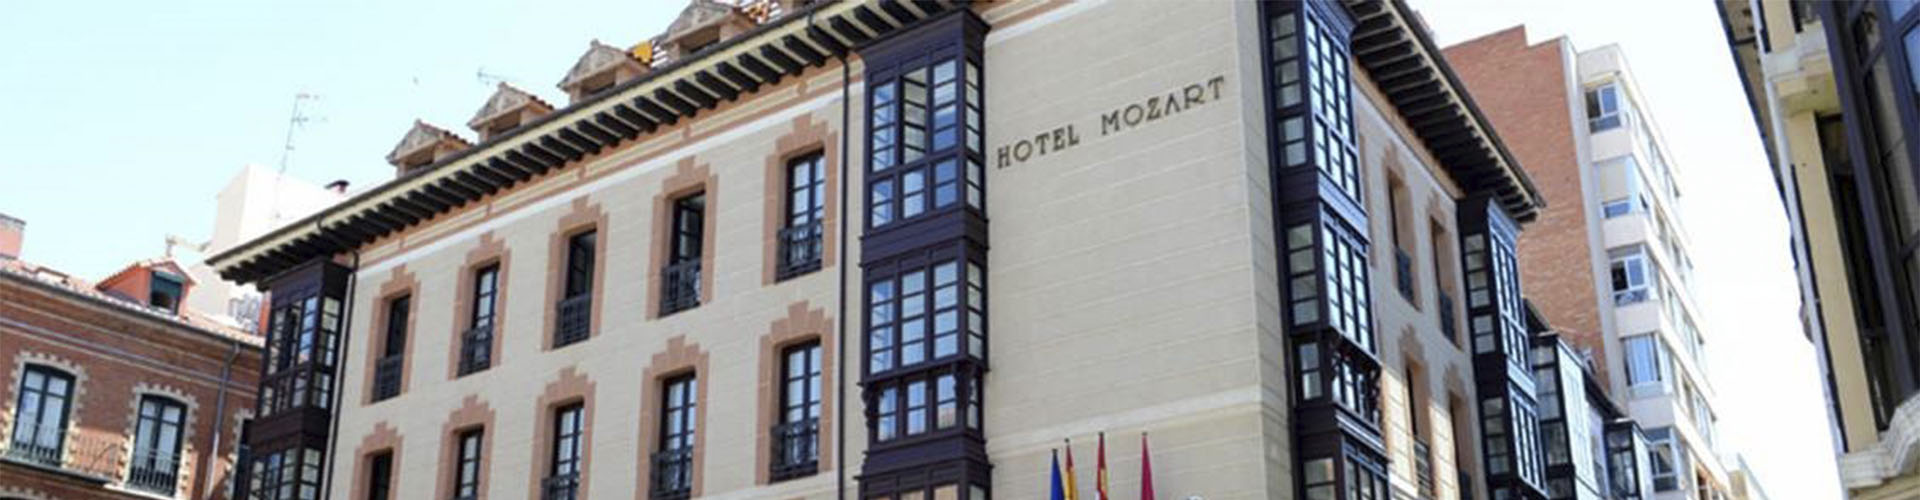 Hotel Mozart Rehabilitación Sánchez Villarreal Valladolid